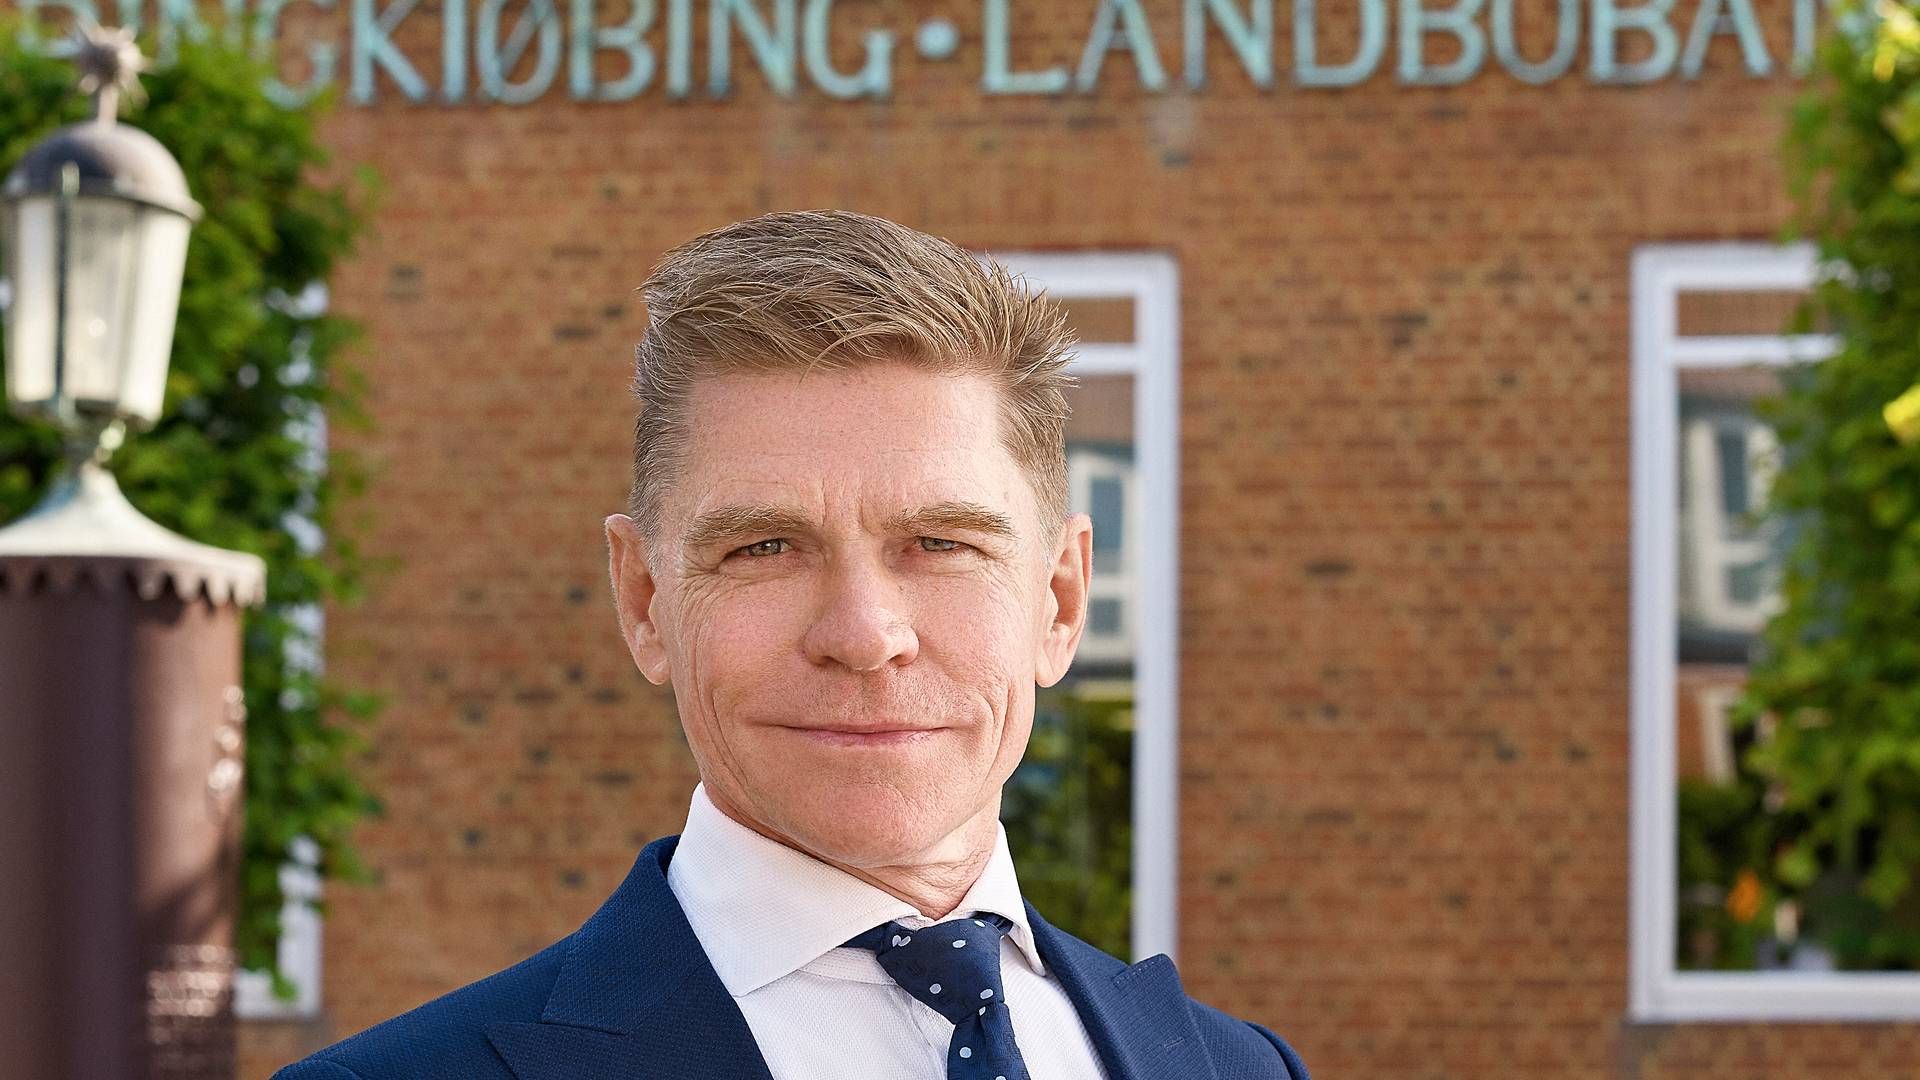 Ringkjøbing Landbobank med John Fisker i spidsen havde en formodning om, at kundetilgangen i 2023 ville være afdæmpet på grund af et stille boligmarked, men det har ikke været tilfældet indtil videre. | Foto: Pr / Ringkjøbing Landbobank